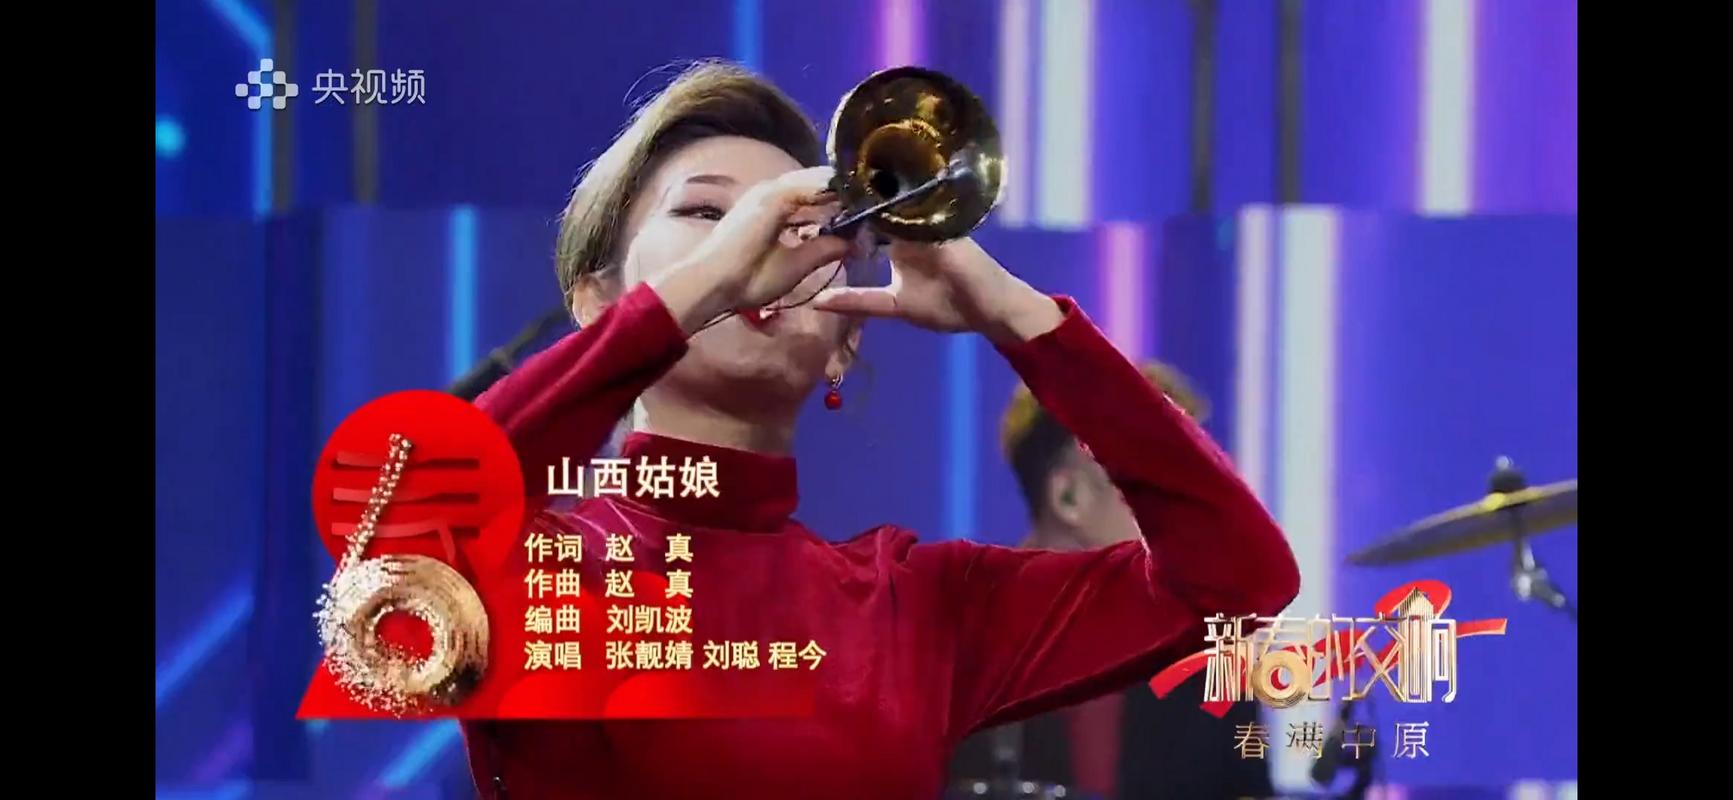 山西卫视主持人张靓婧在央视音乐频道《情满中原》节目中唱了一首